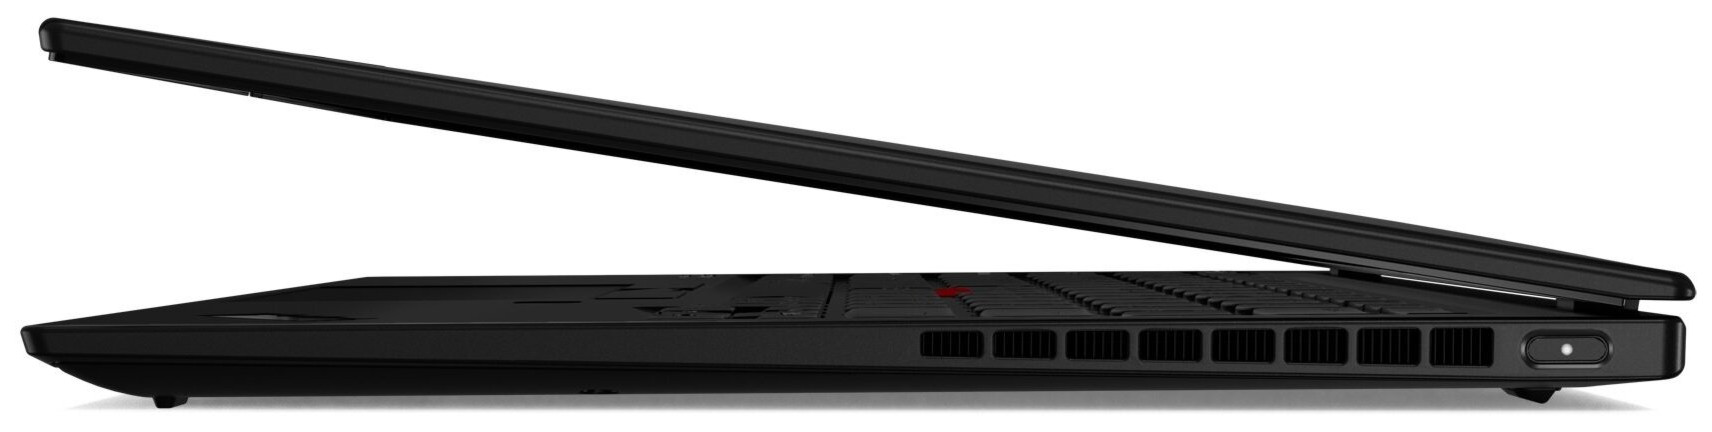 Ноутбук Lenovo ThinkPad X1 Nano 13 (20UN005SRT) фото №6